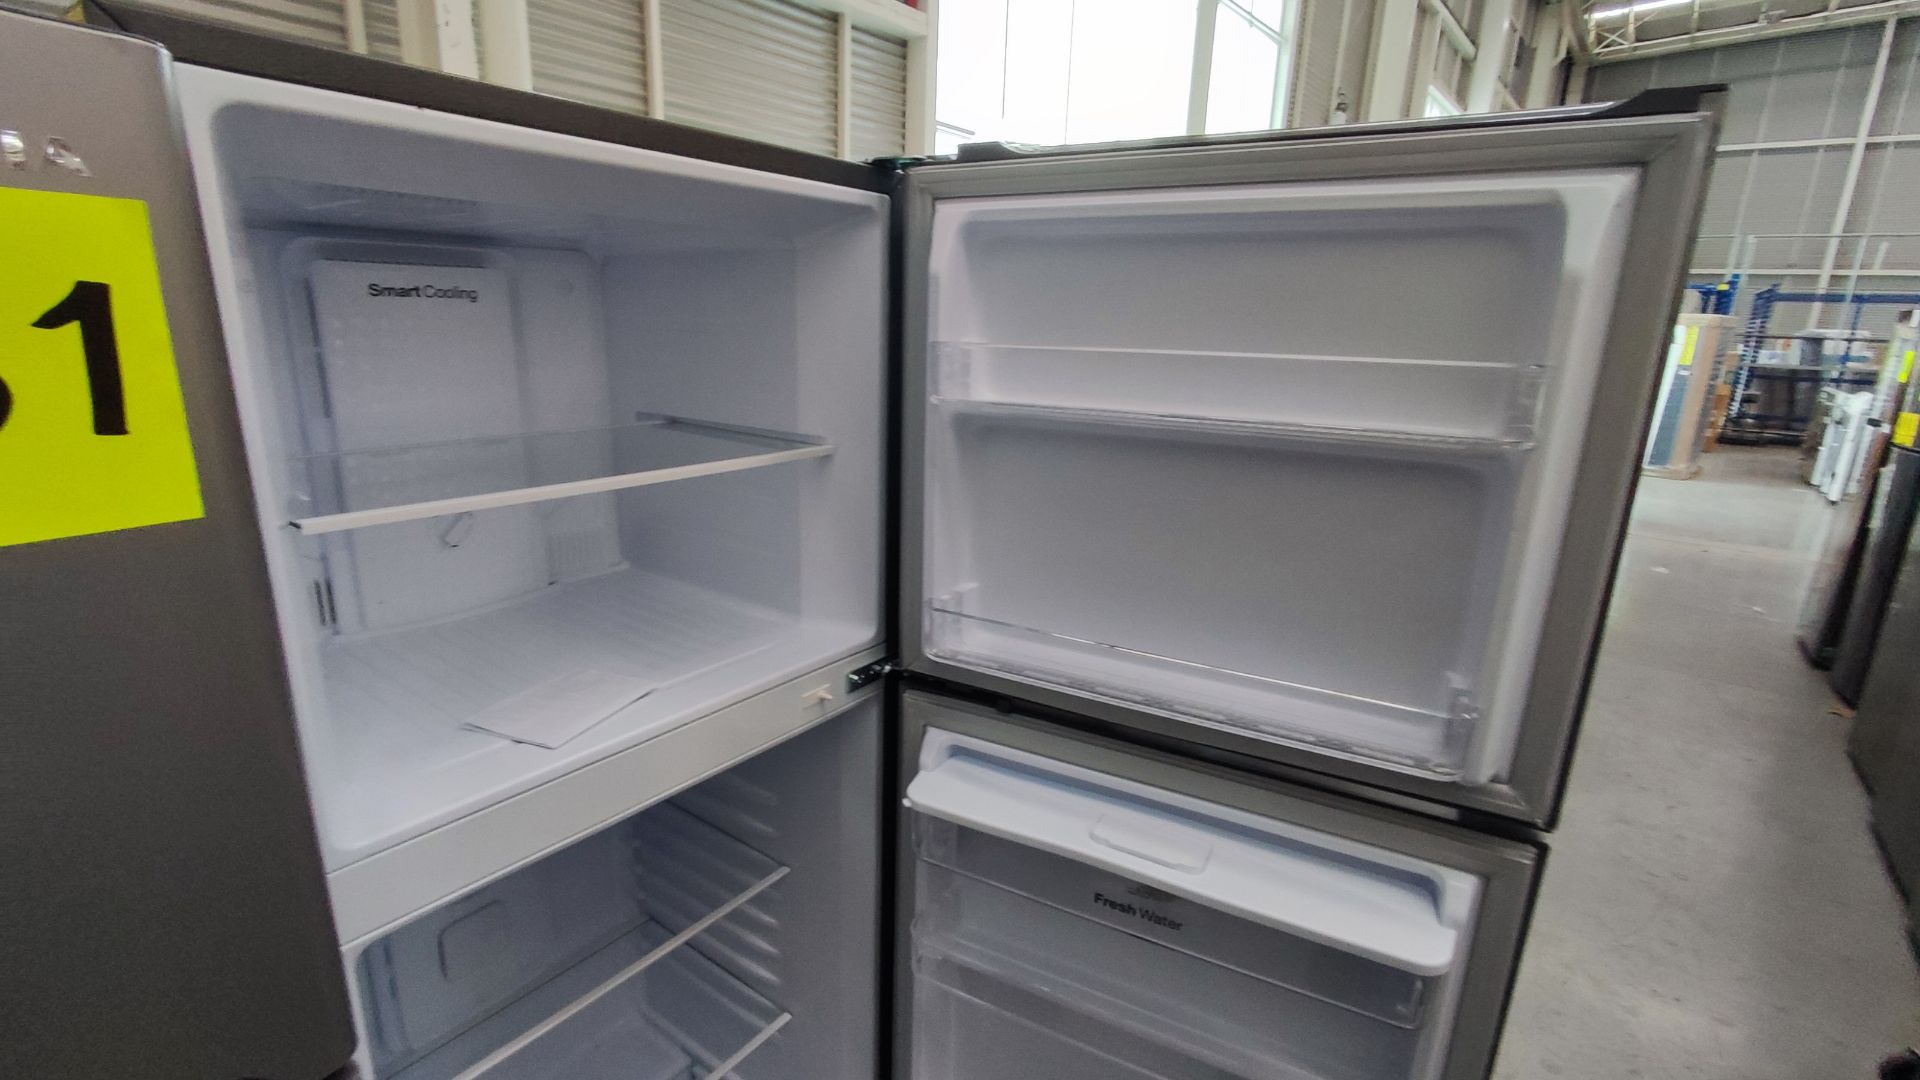 Lote Conformado por 2 Refrigeradores, Contiene; 1 Refrigerador con Dispensador de Agua Marca Whirlp - Image 9 of 13